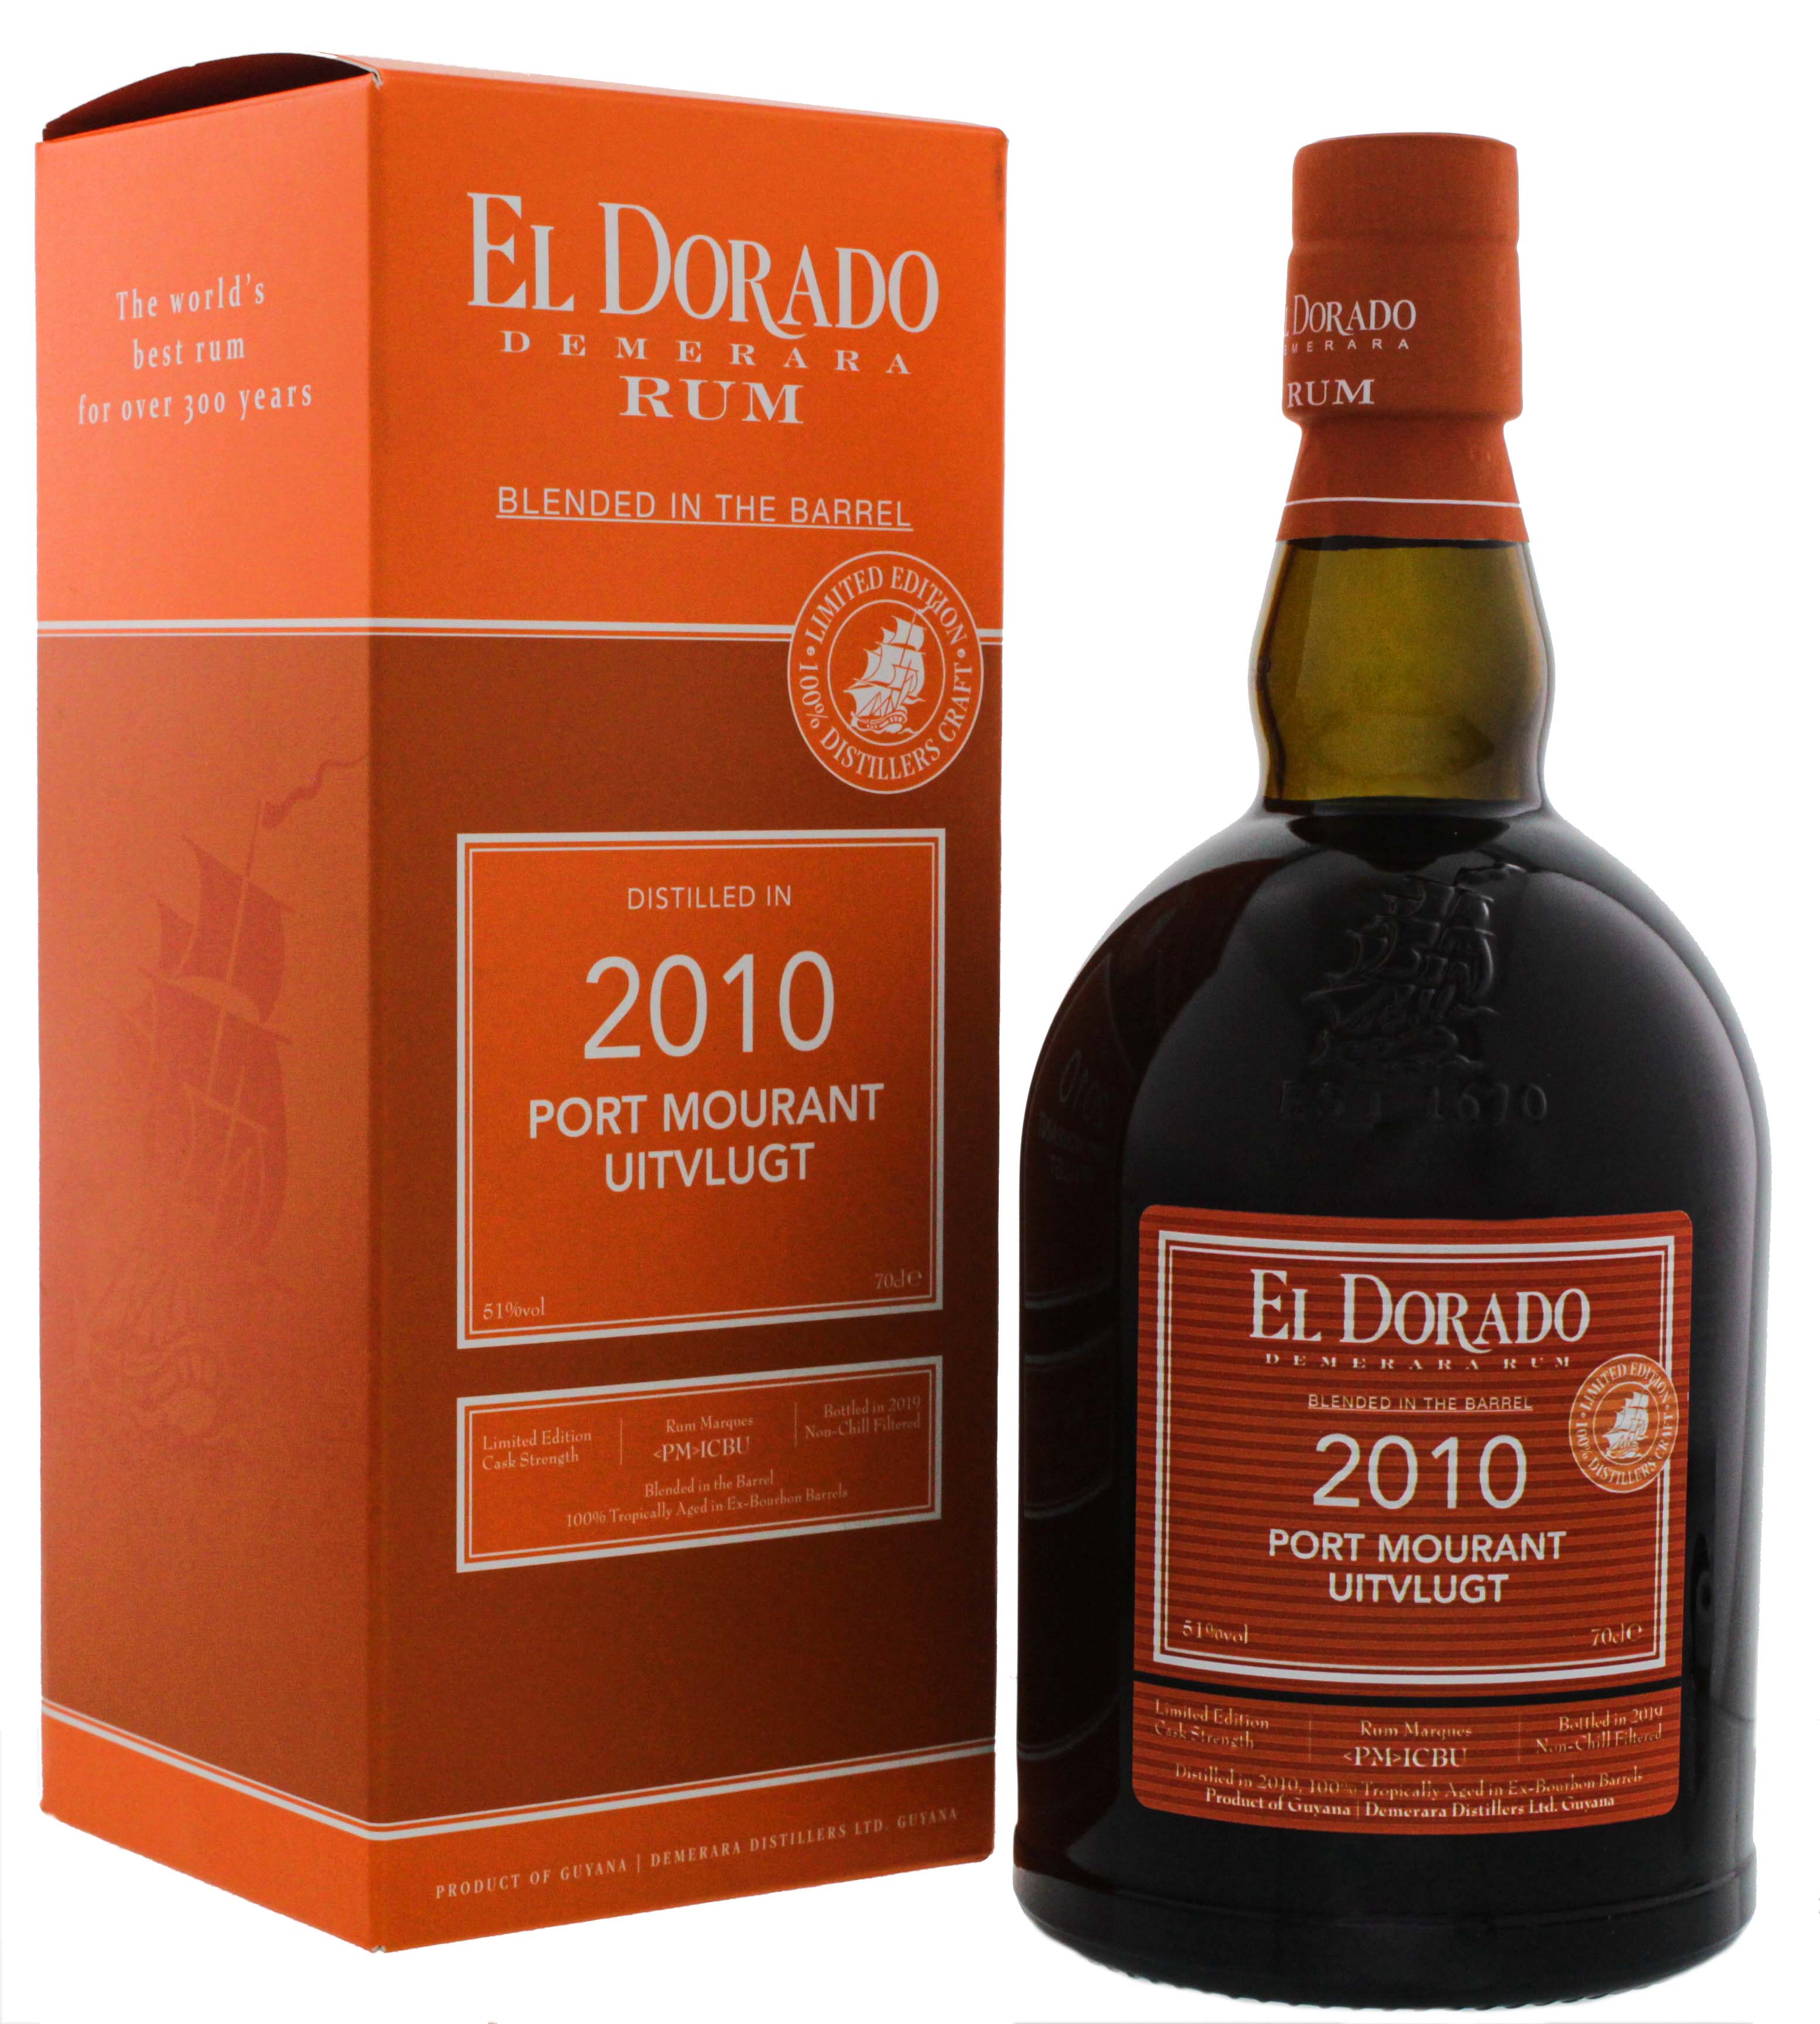 El Dorado Rum Blended in the Barrel 2010/2019 Port Mourant Uitvlugt Limited Ed. 0,7L